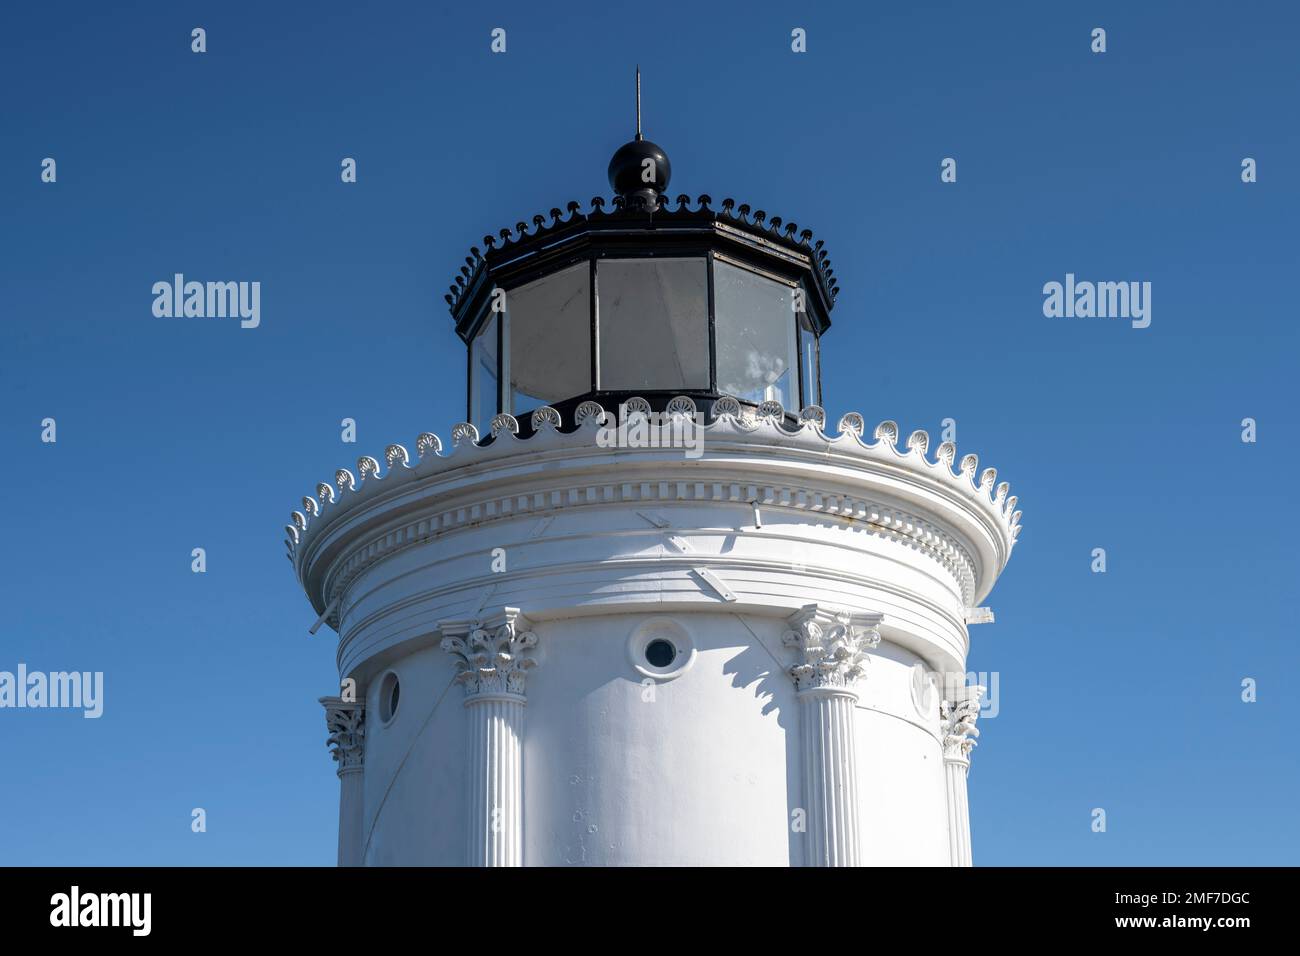 Der Portland Brekwater Lighthouse in South Portland, Maine, trägt den Spitznamen Bug Light und wurde von Thomas Walter entworfen, der vom Choragic Monument of Lysi inspiriert wurde Stockfoto